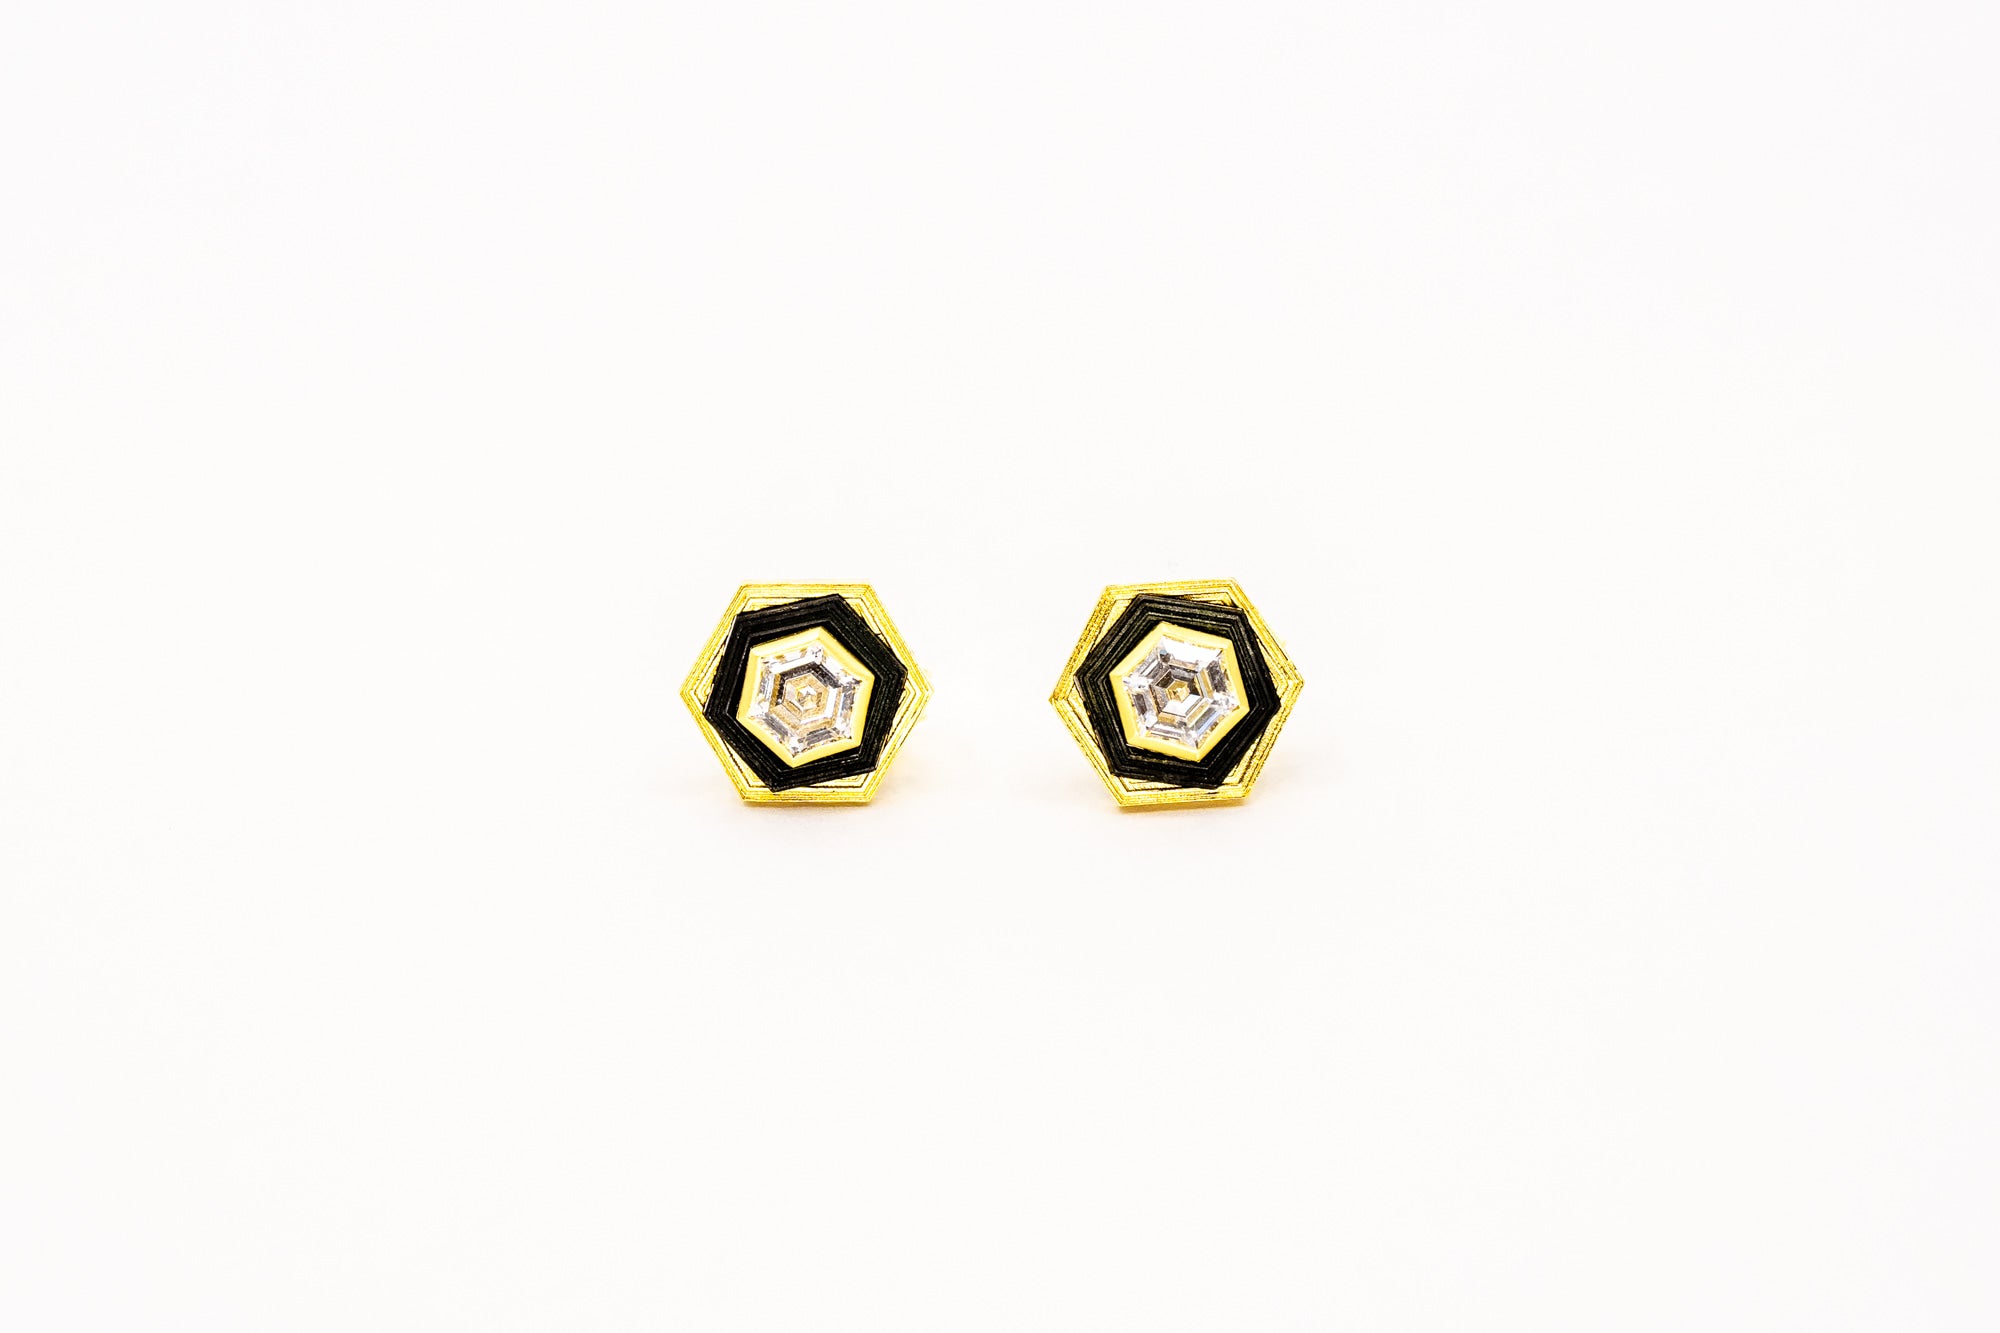 Paramount Diamond + Hexagon Studs